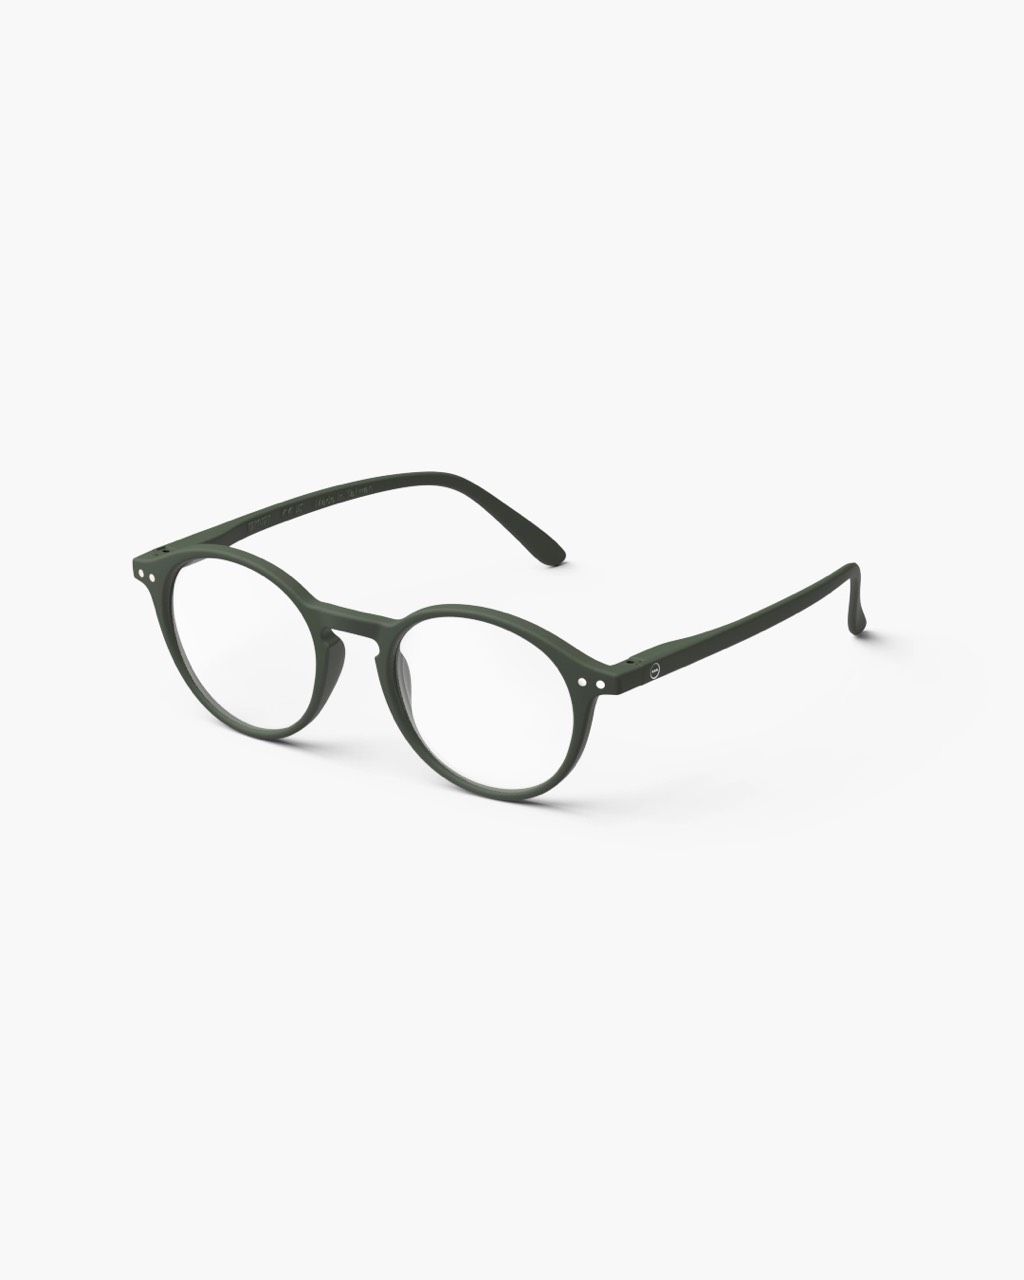 D KAKI GREEN - Reading Glasses